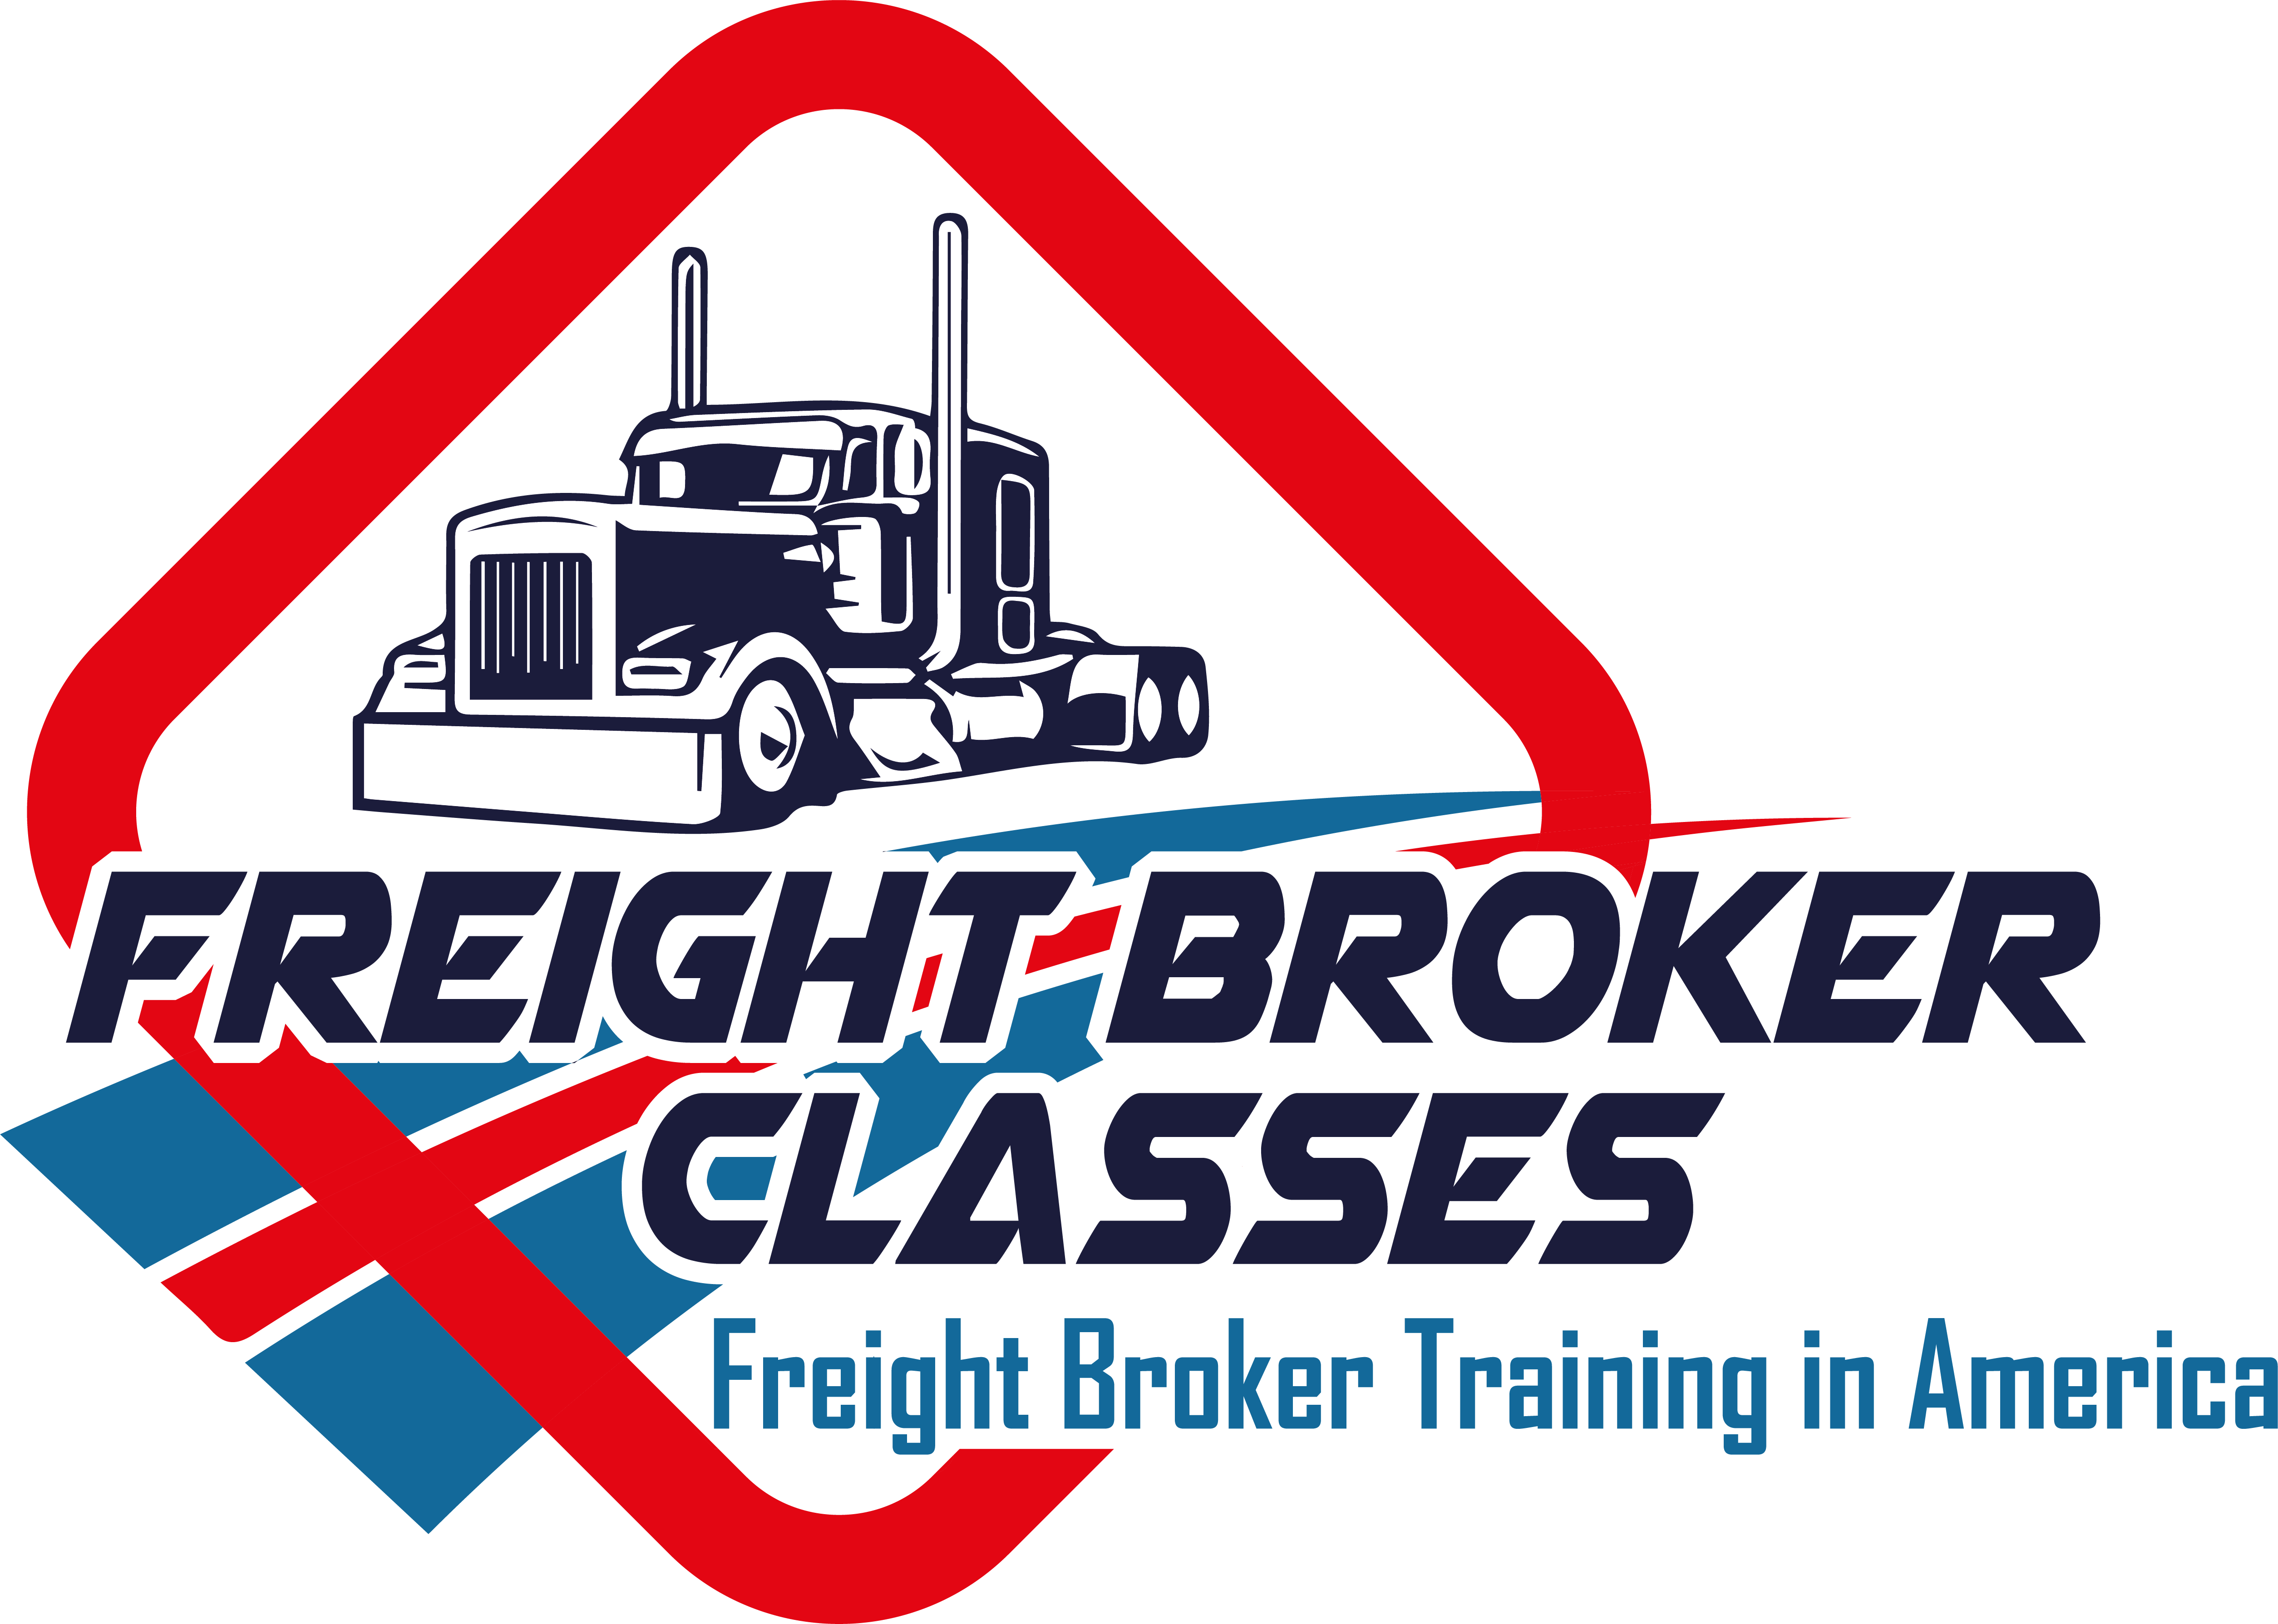 Freight Broker Classes